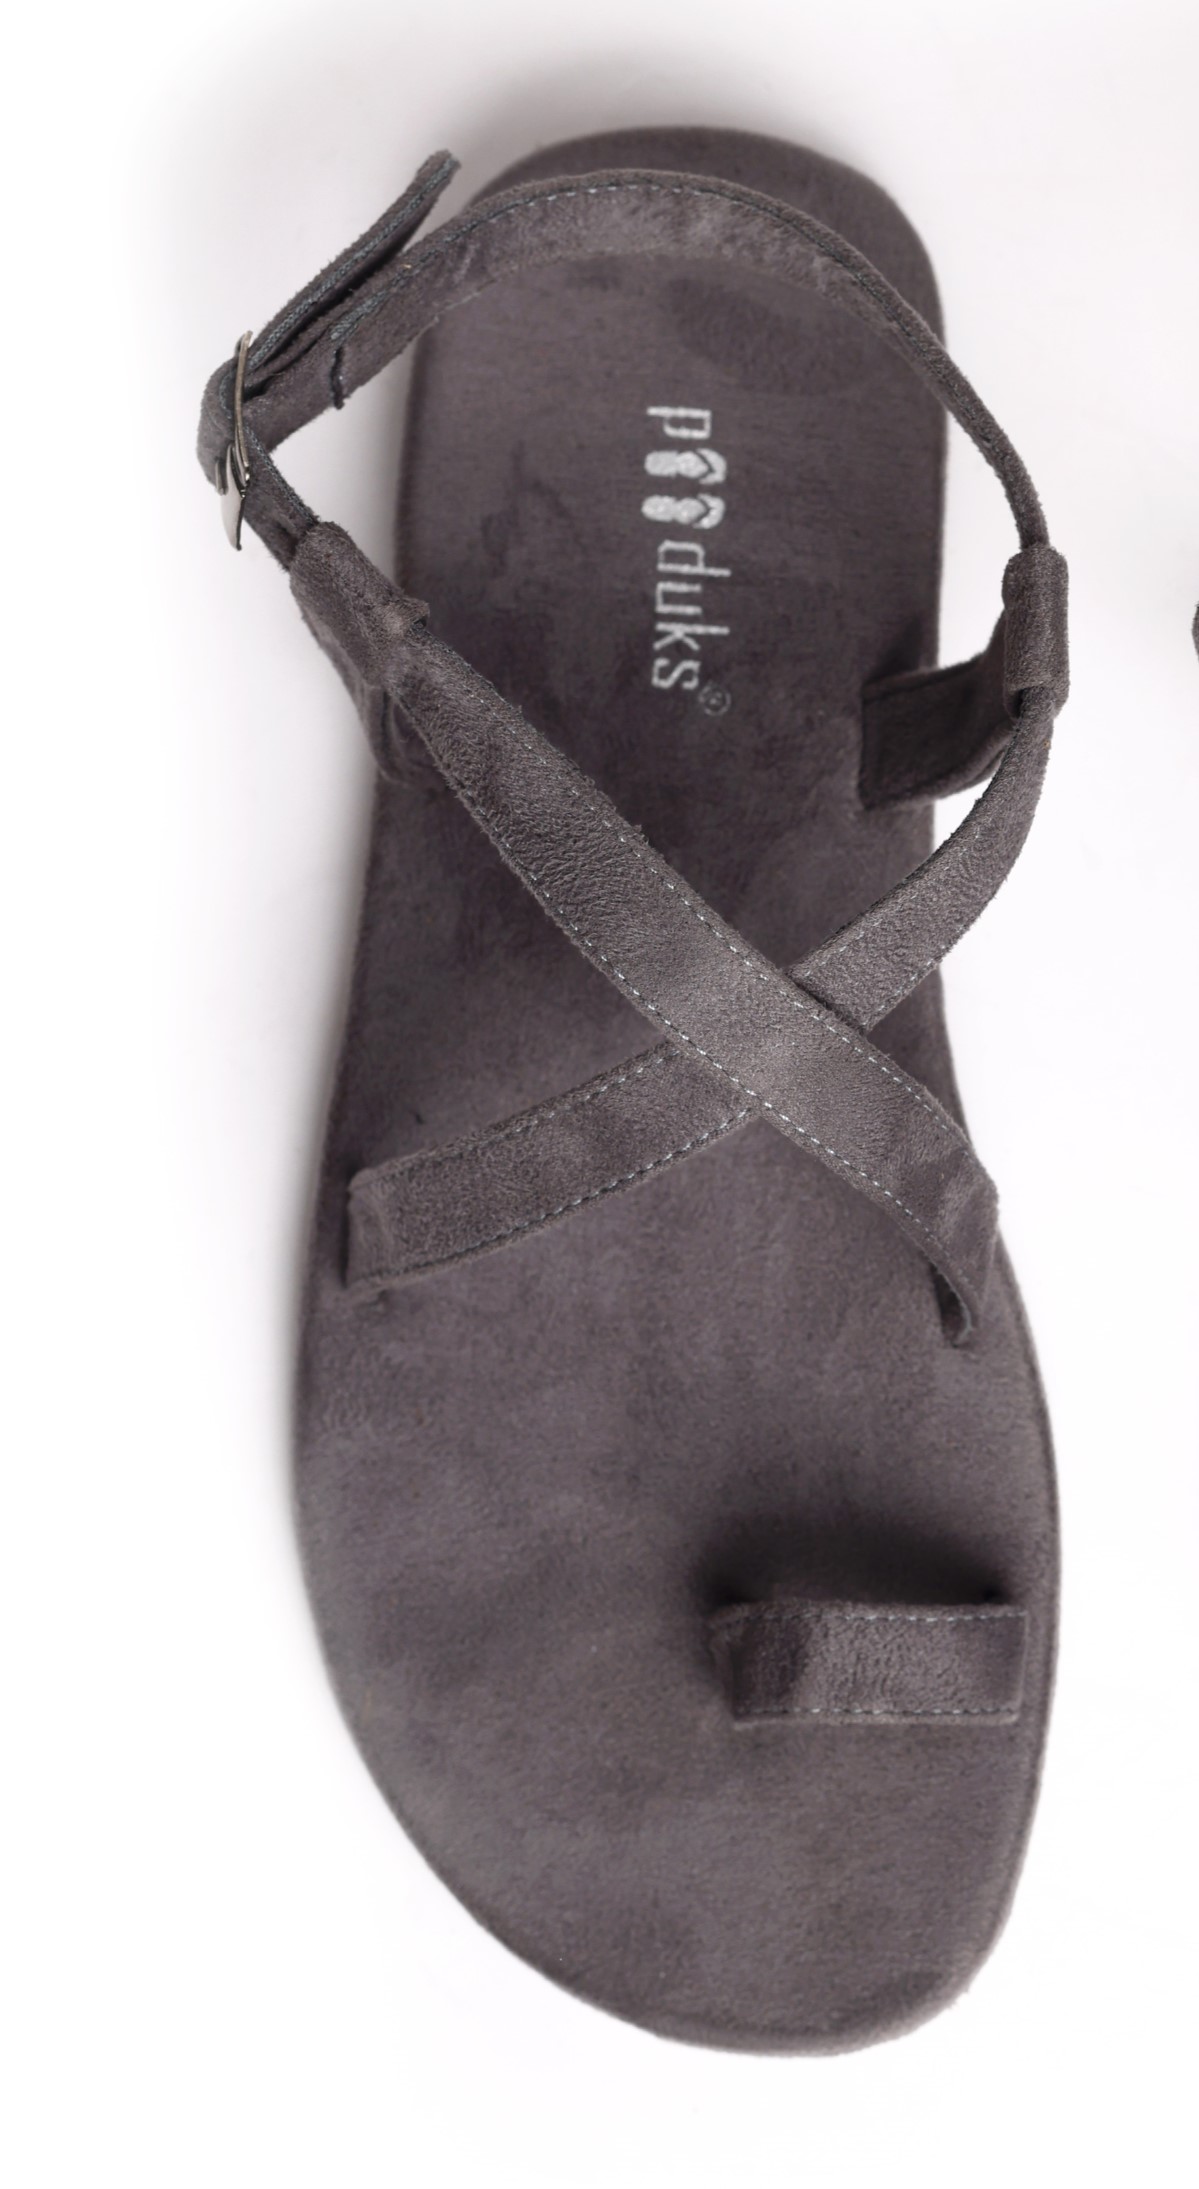 Product: Paaduks Sko Grey Flat Sandals For Men